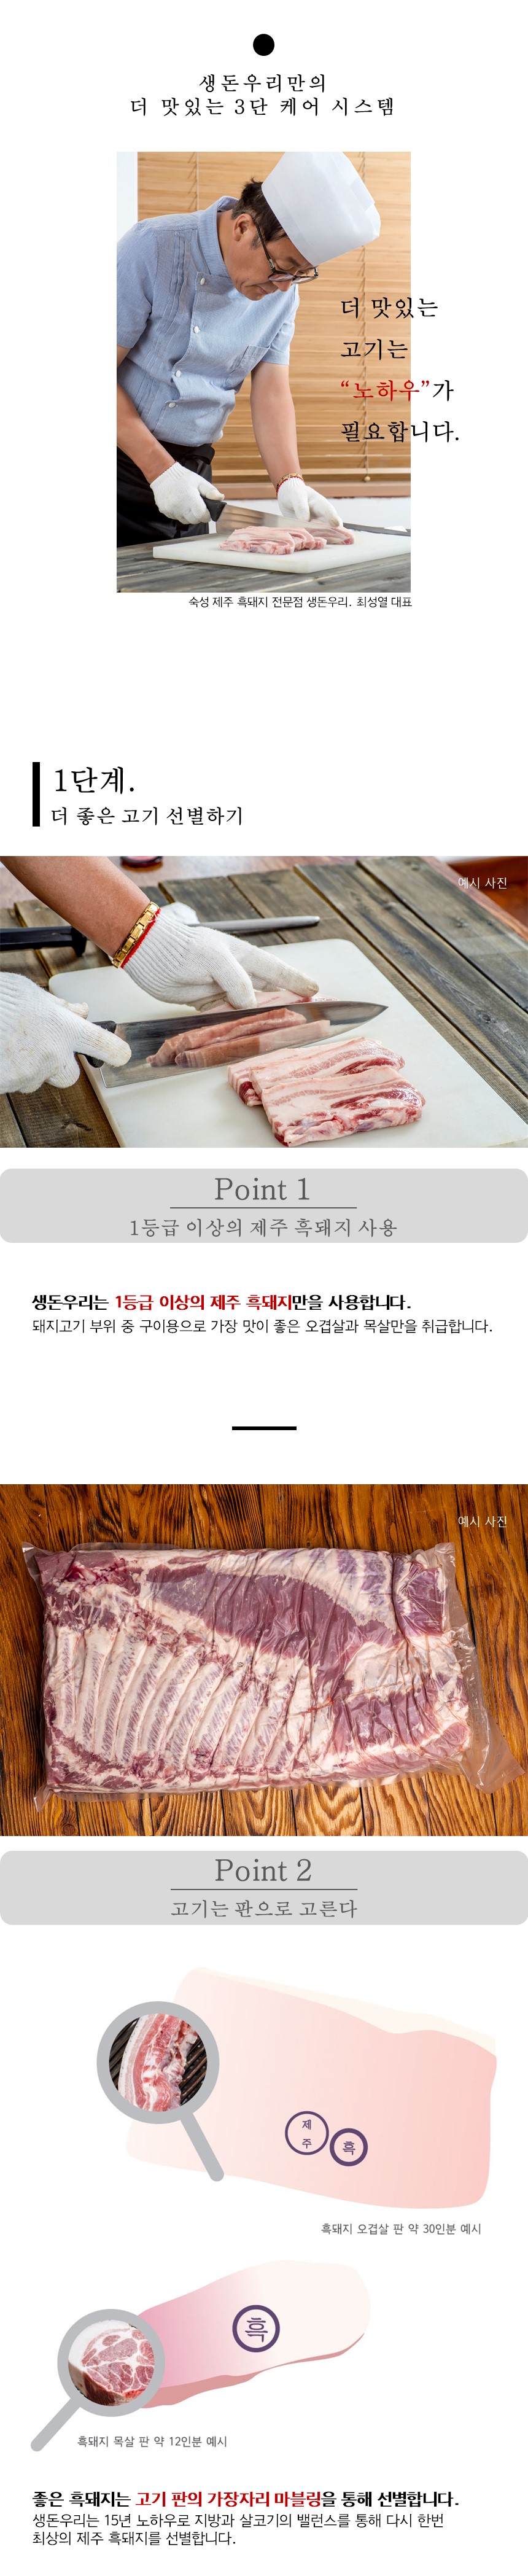 [냉장]30숙성 제주 흑돼지 오겹살 1kg